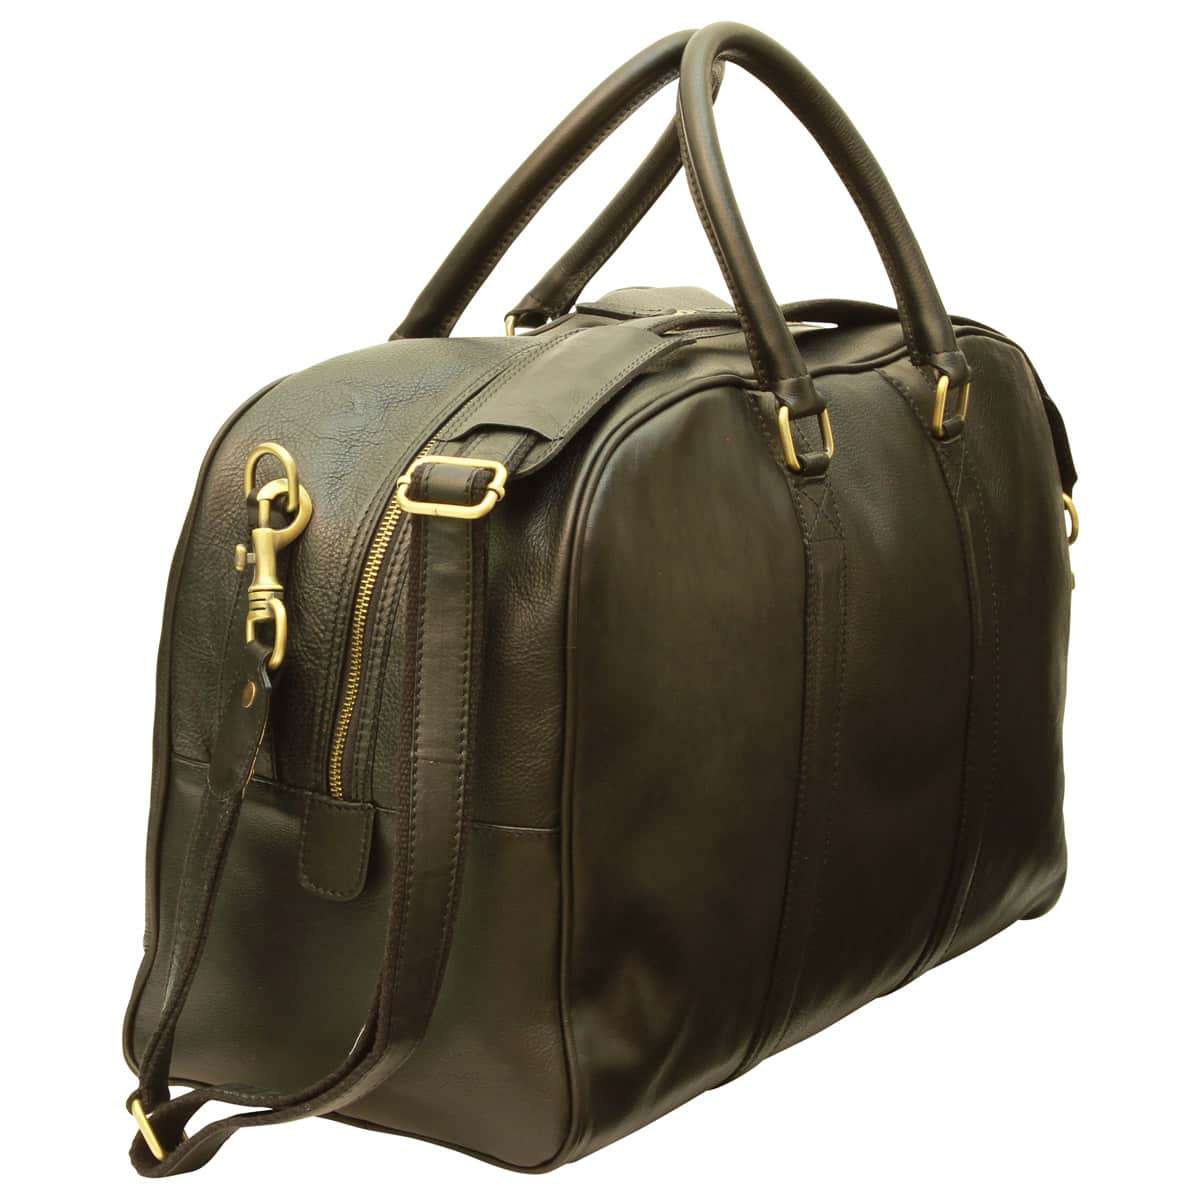 Soft Calfskin Leather Travel Bag - Black | 030591NE US | Old Angler Firenze